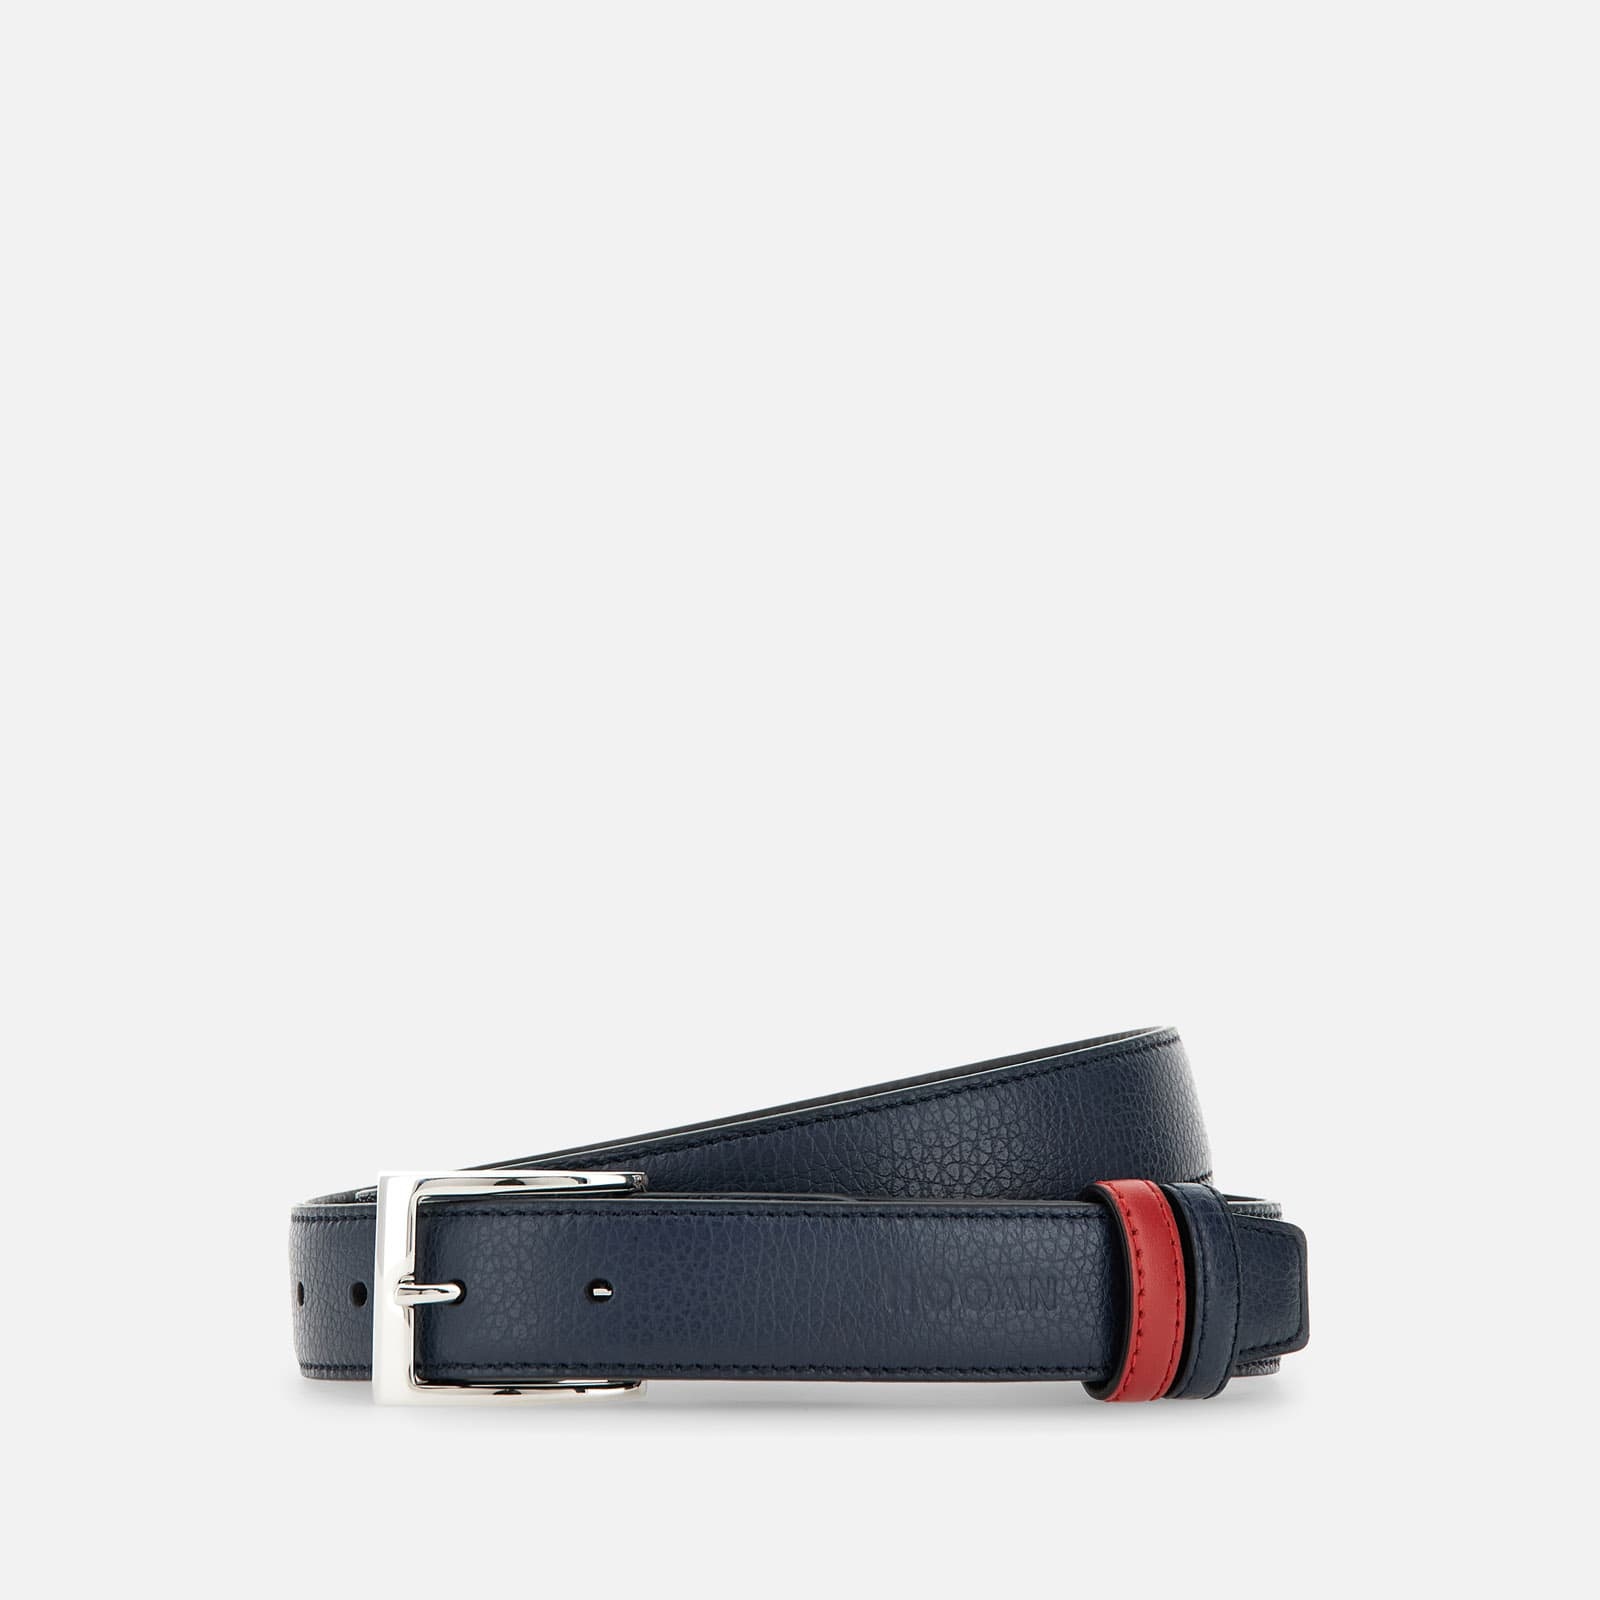 Belt Black Red - 1